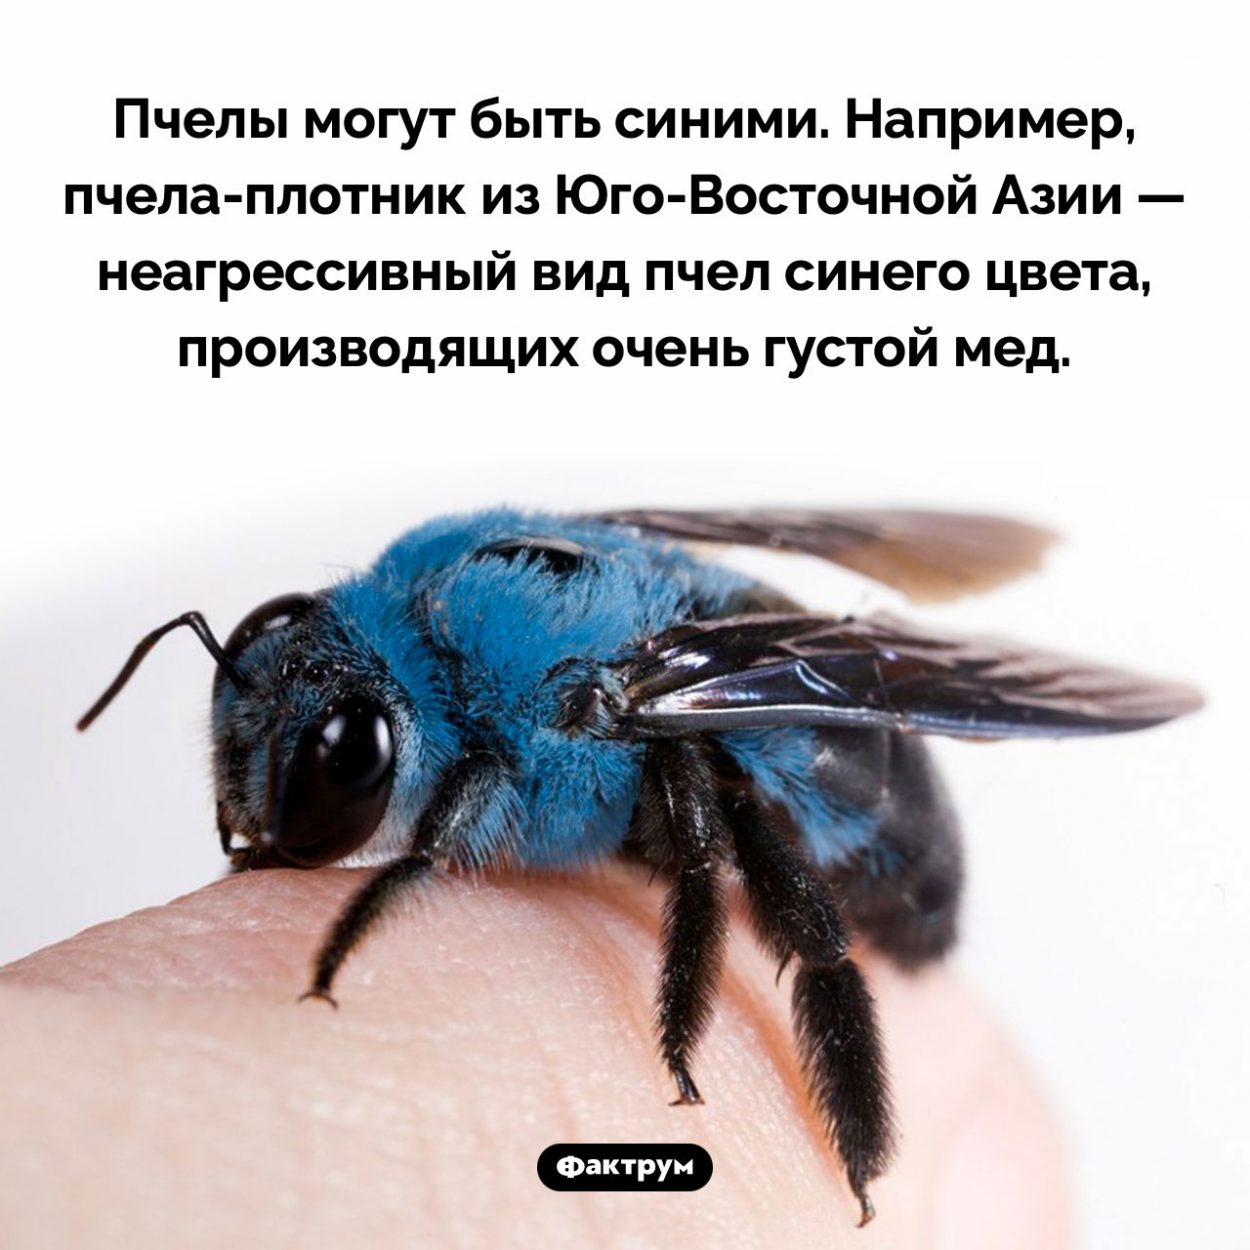 Синие пчелы. Пчелы могут быть синими. Например, пчела-плотник из Юго-Восточной Азии — неагрессивный вид пчел синего цвета, производящих очень густой мед.